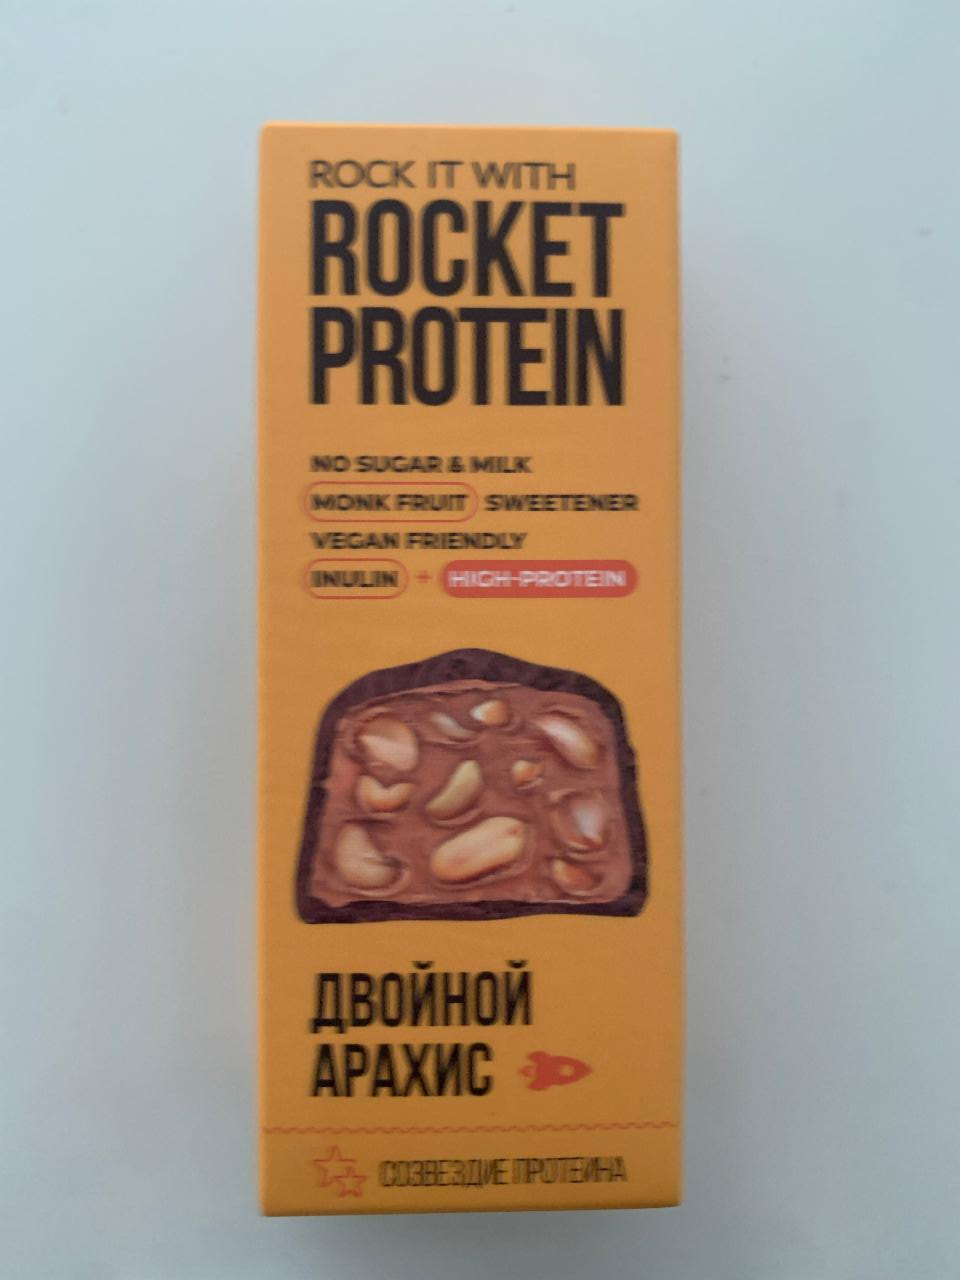 Фото - Протеиновый батончик Двойной арахис Rocket Protein